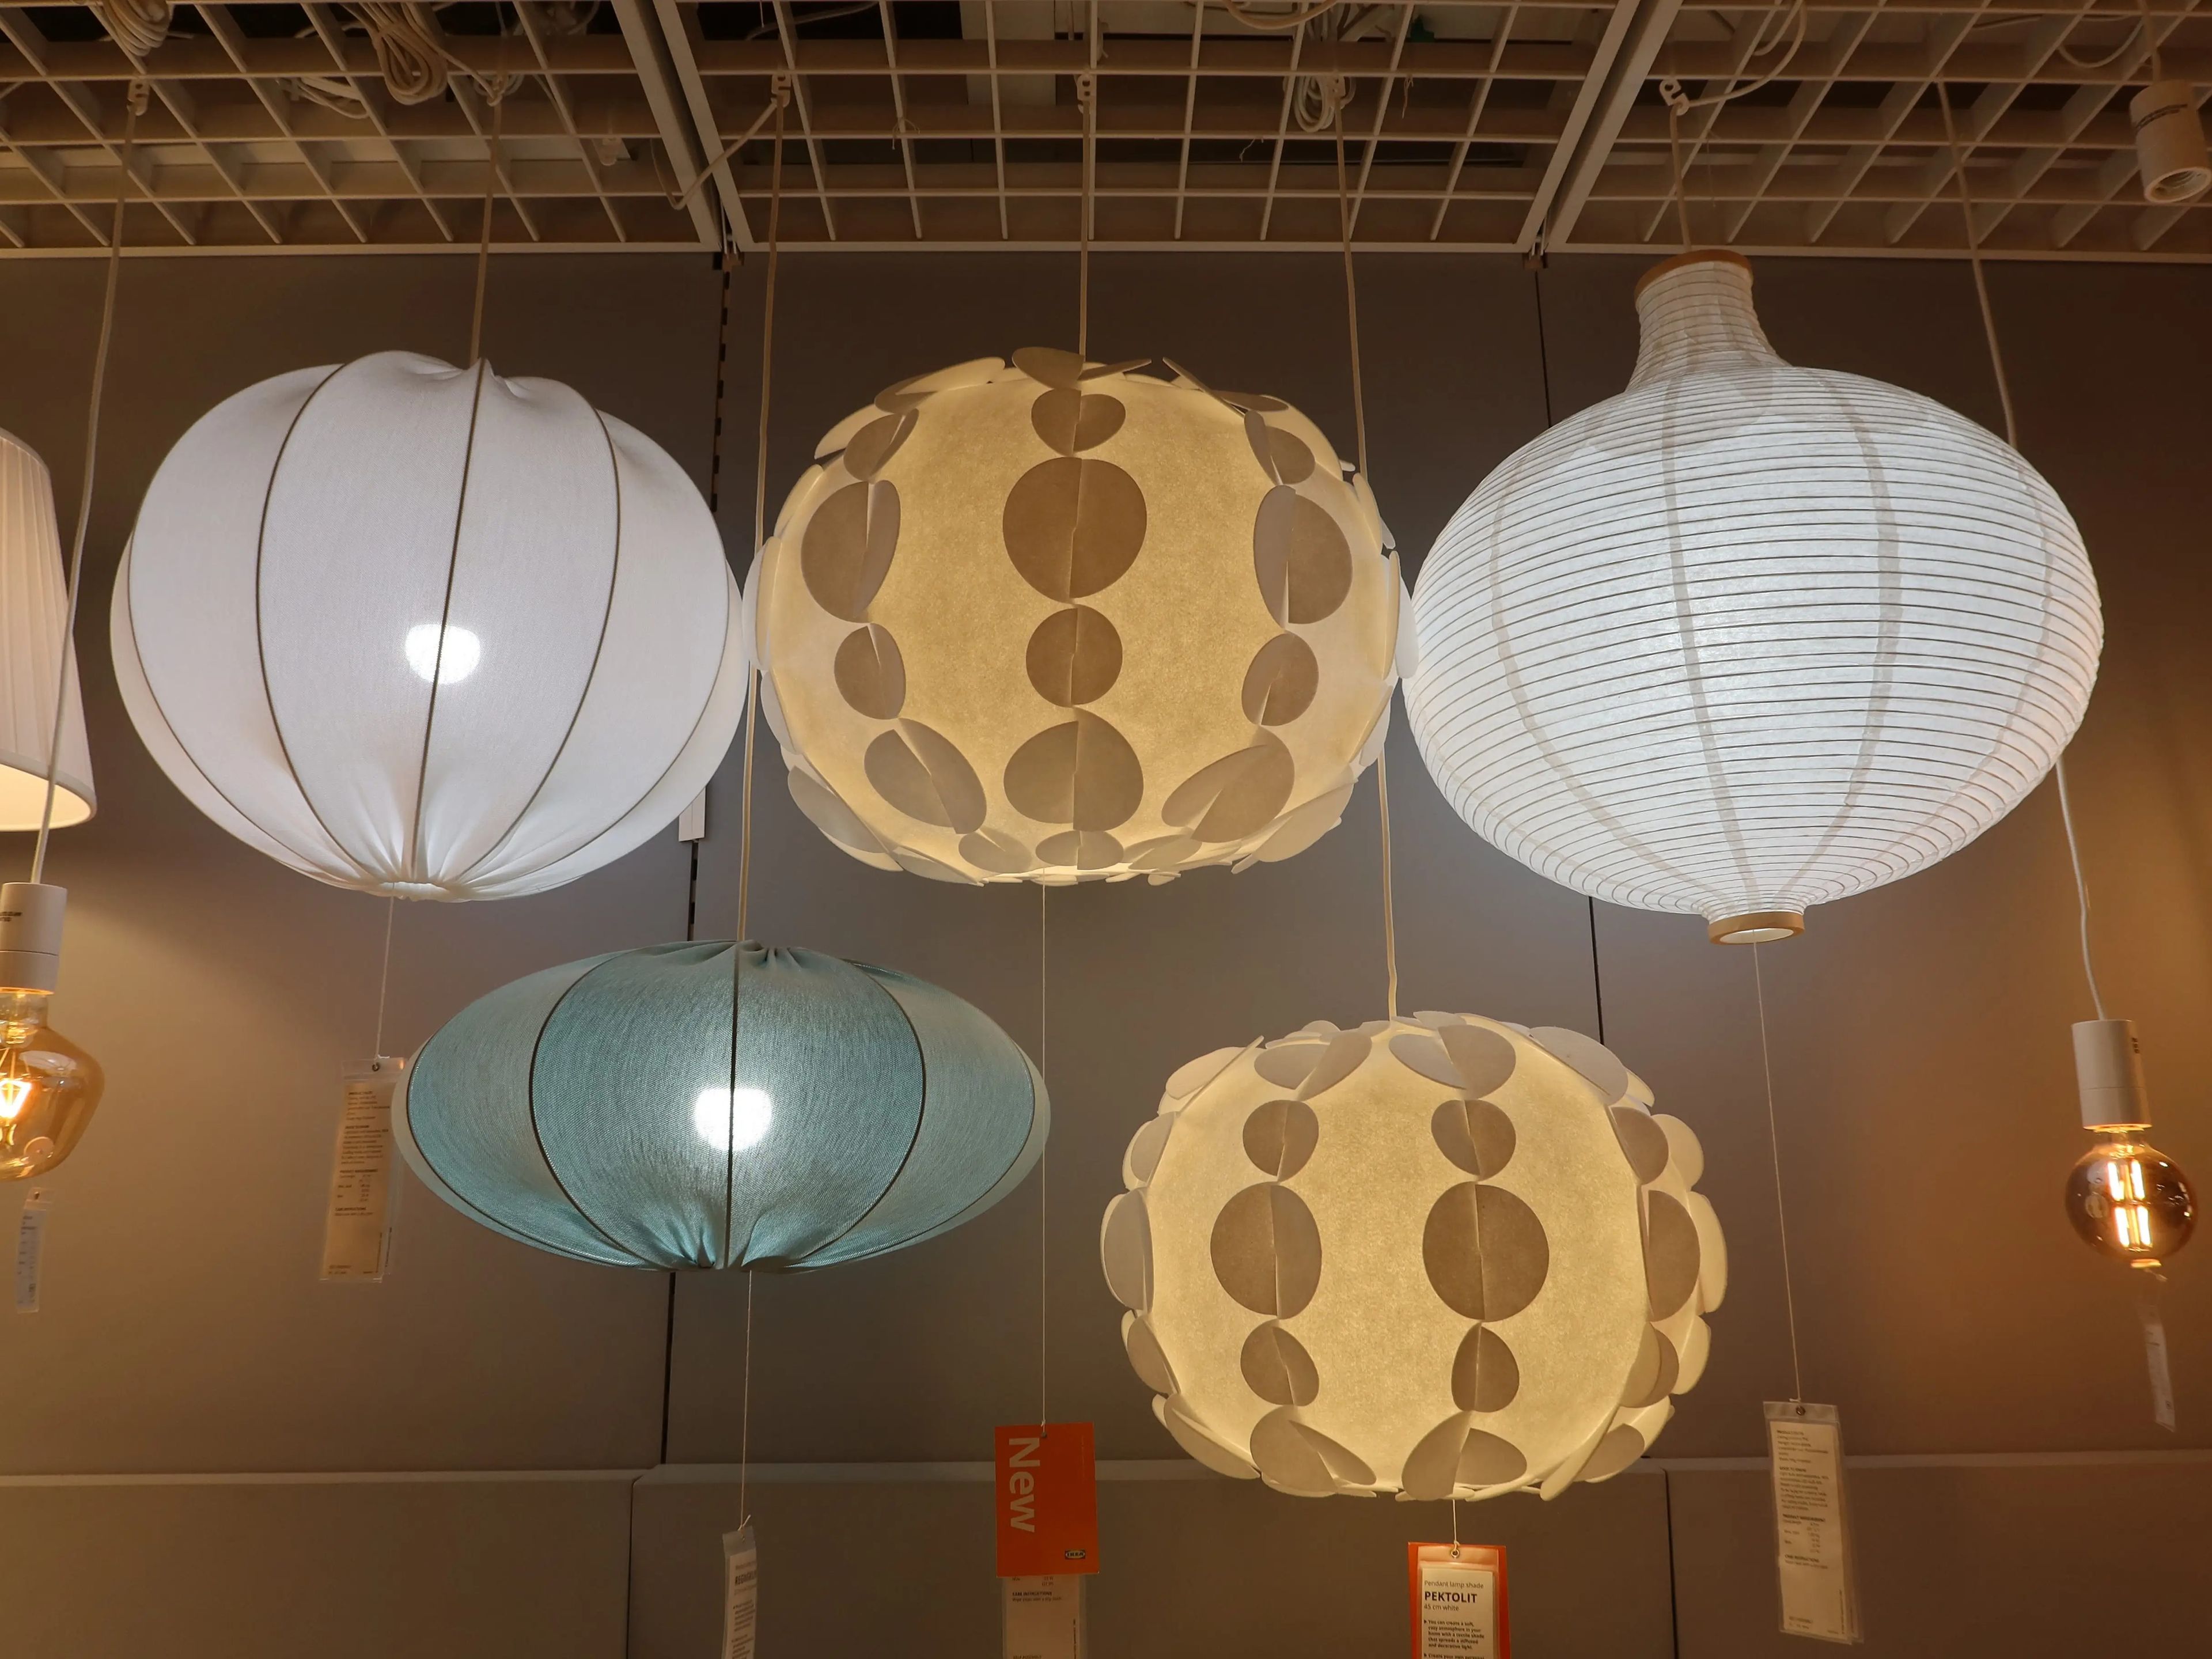 Las lámparas de tela baratas de Ikea pueden ser endebles.